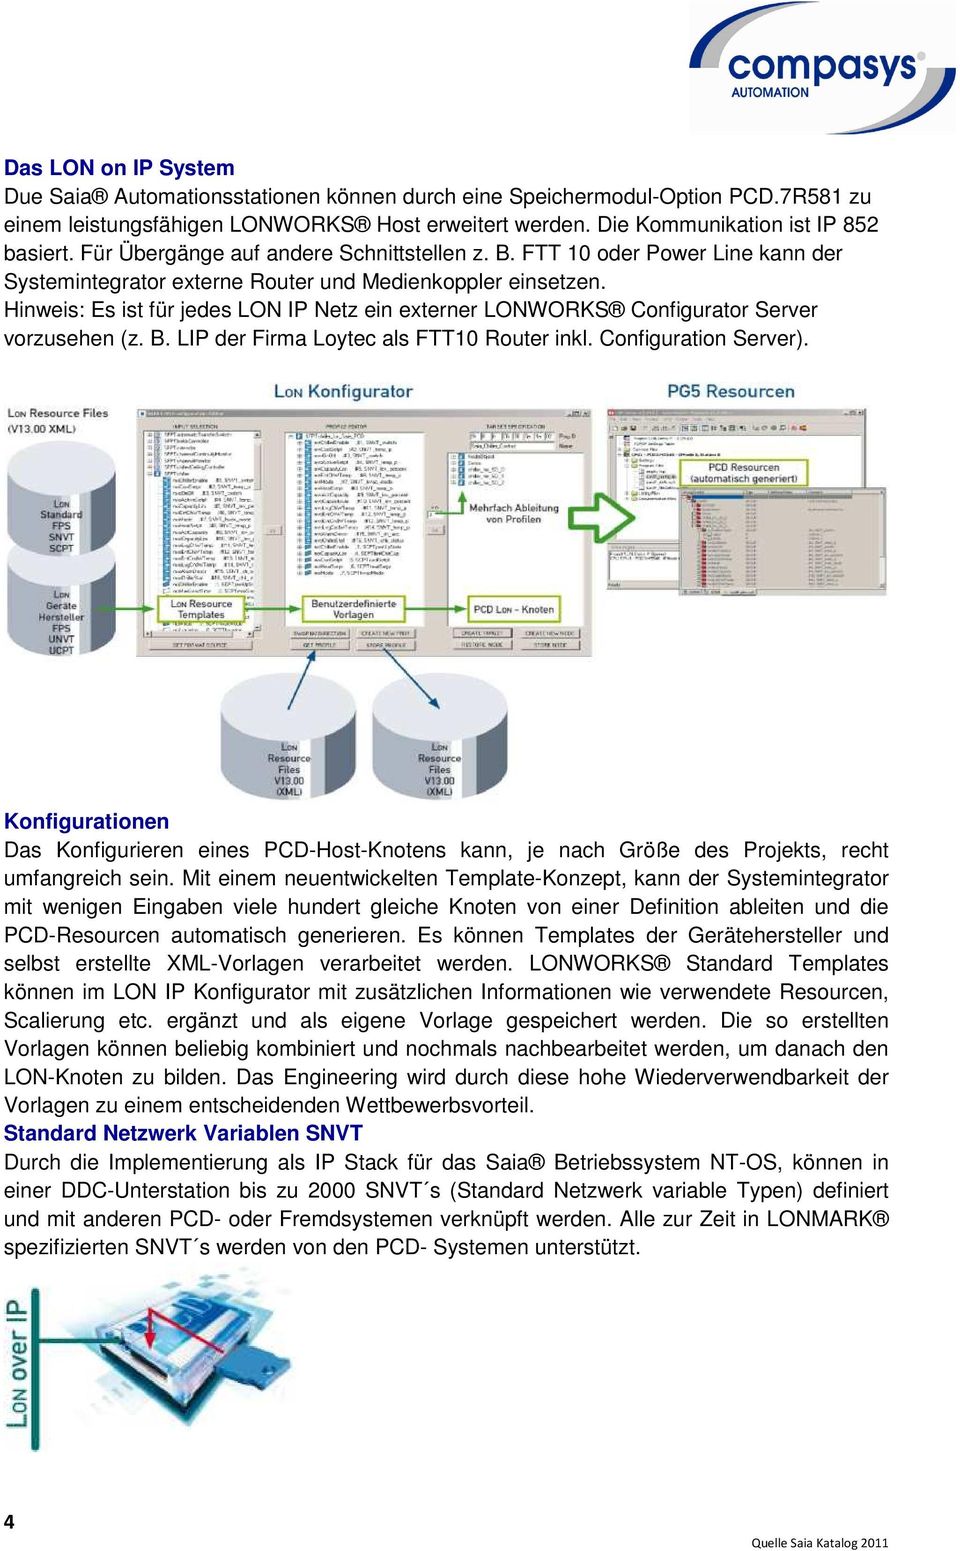 Hinweis: Es ist für jedes LON IP Netz ein externer LONWORKS Configurator Server vorzusehen (z. B. LIP der Firma Loytec als FTT10 Router inkl. Configuration Server).